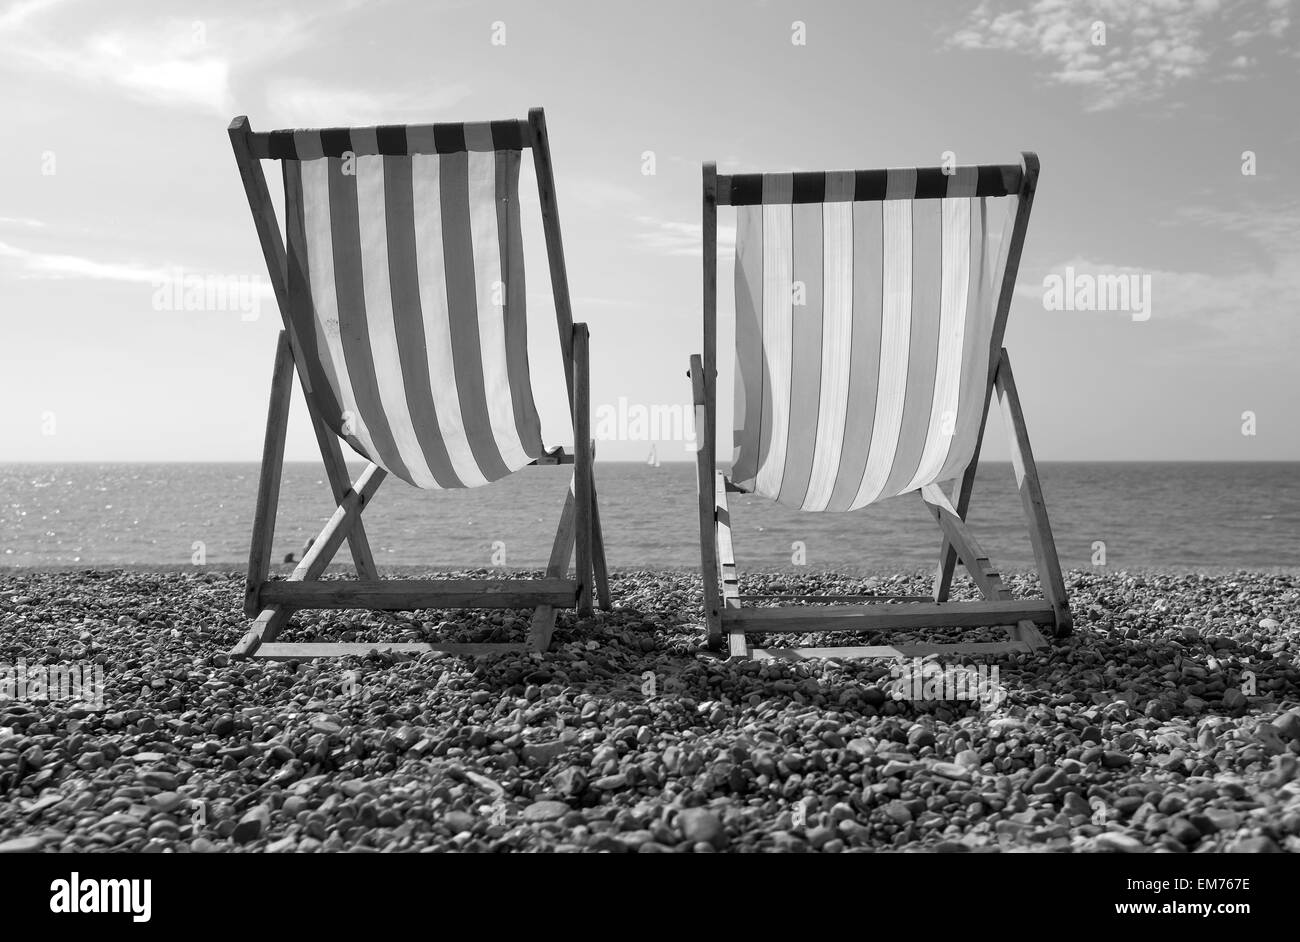 La plage de Brighton, de chaises longues sur la plage avec un seul bateau à voile à l'arrière-plan noir et blanc Banque D'Images